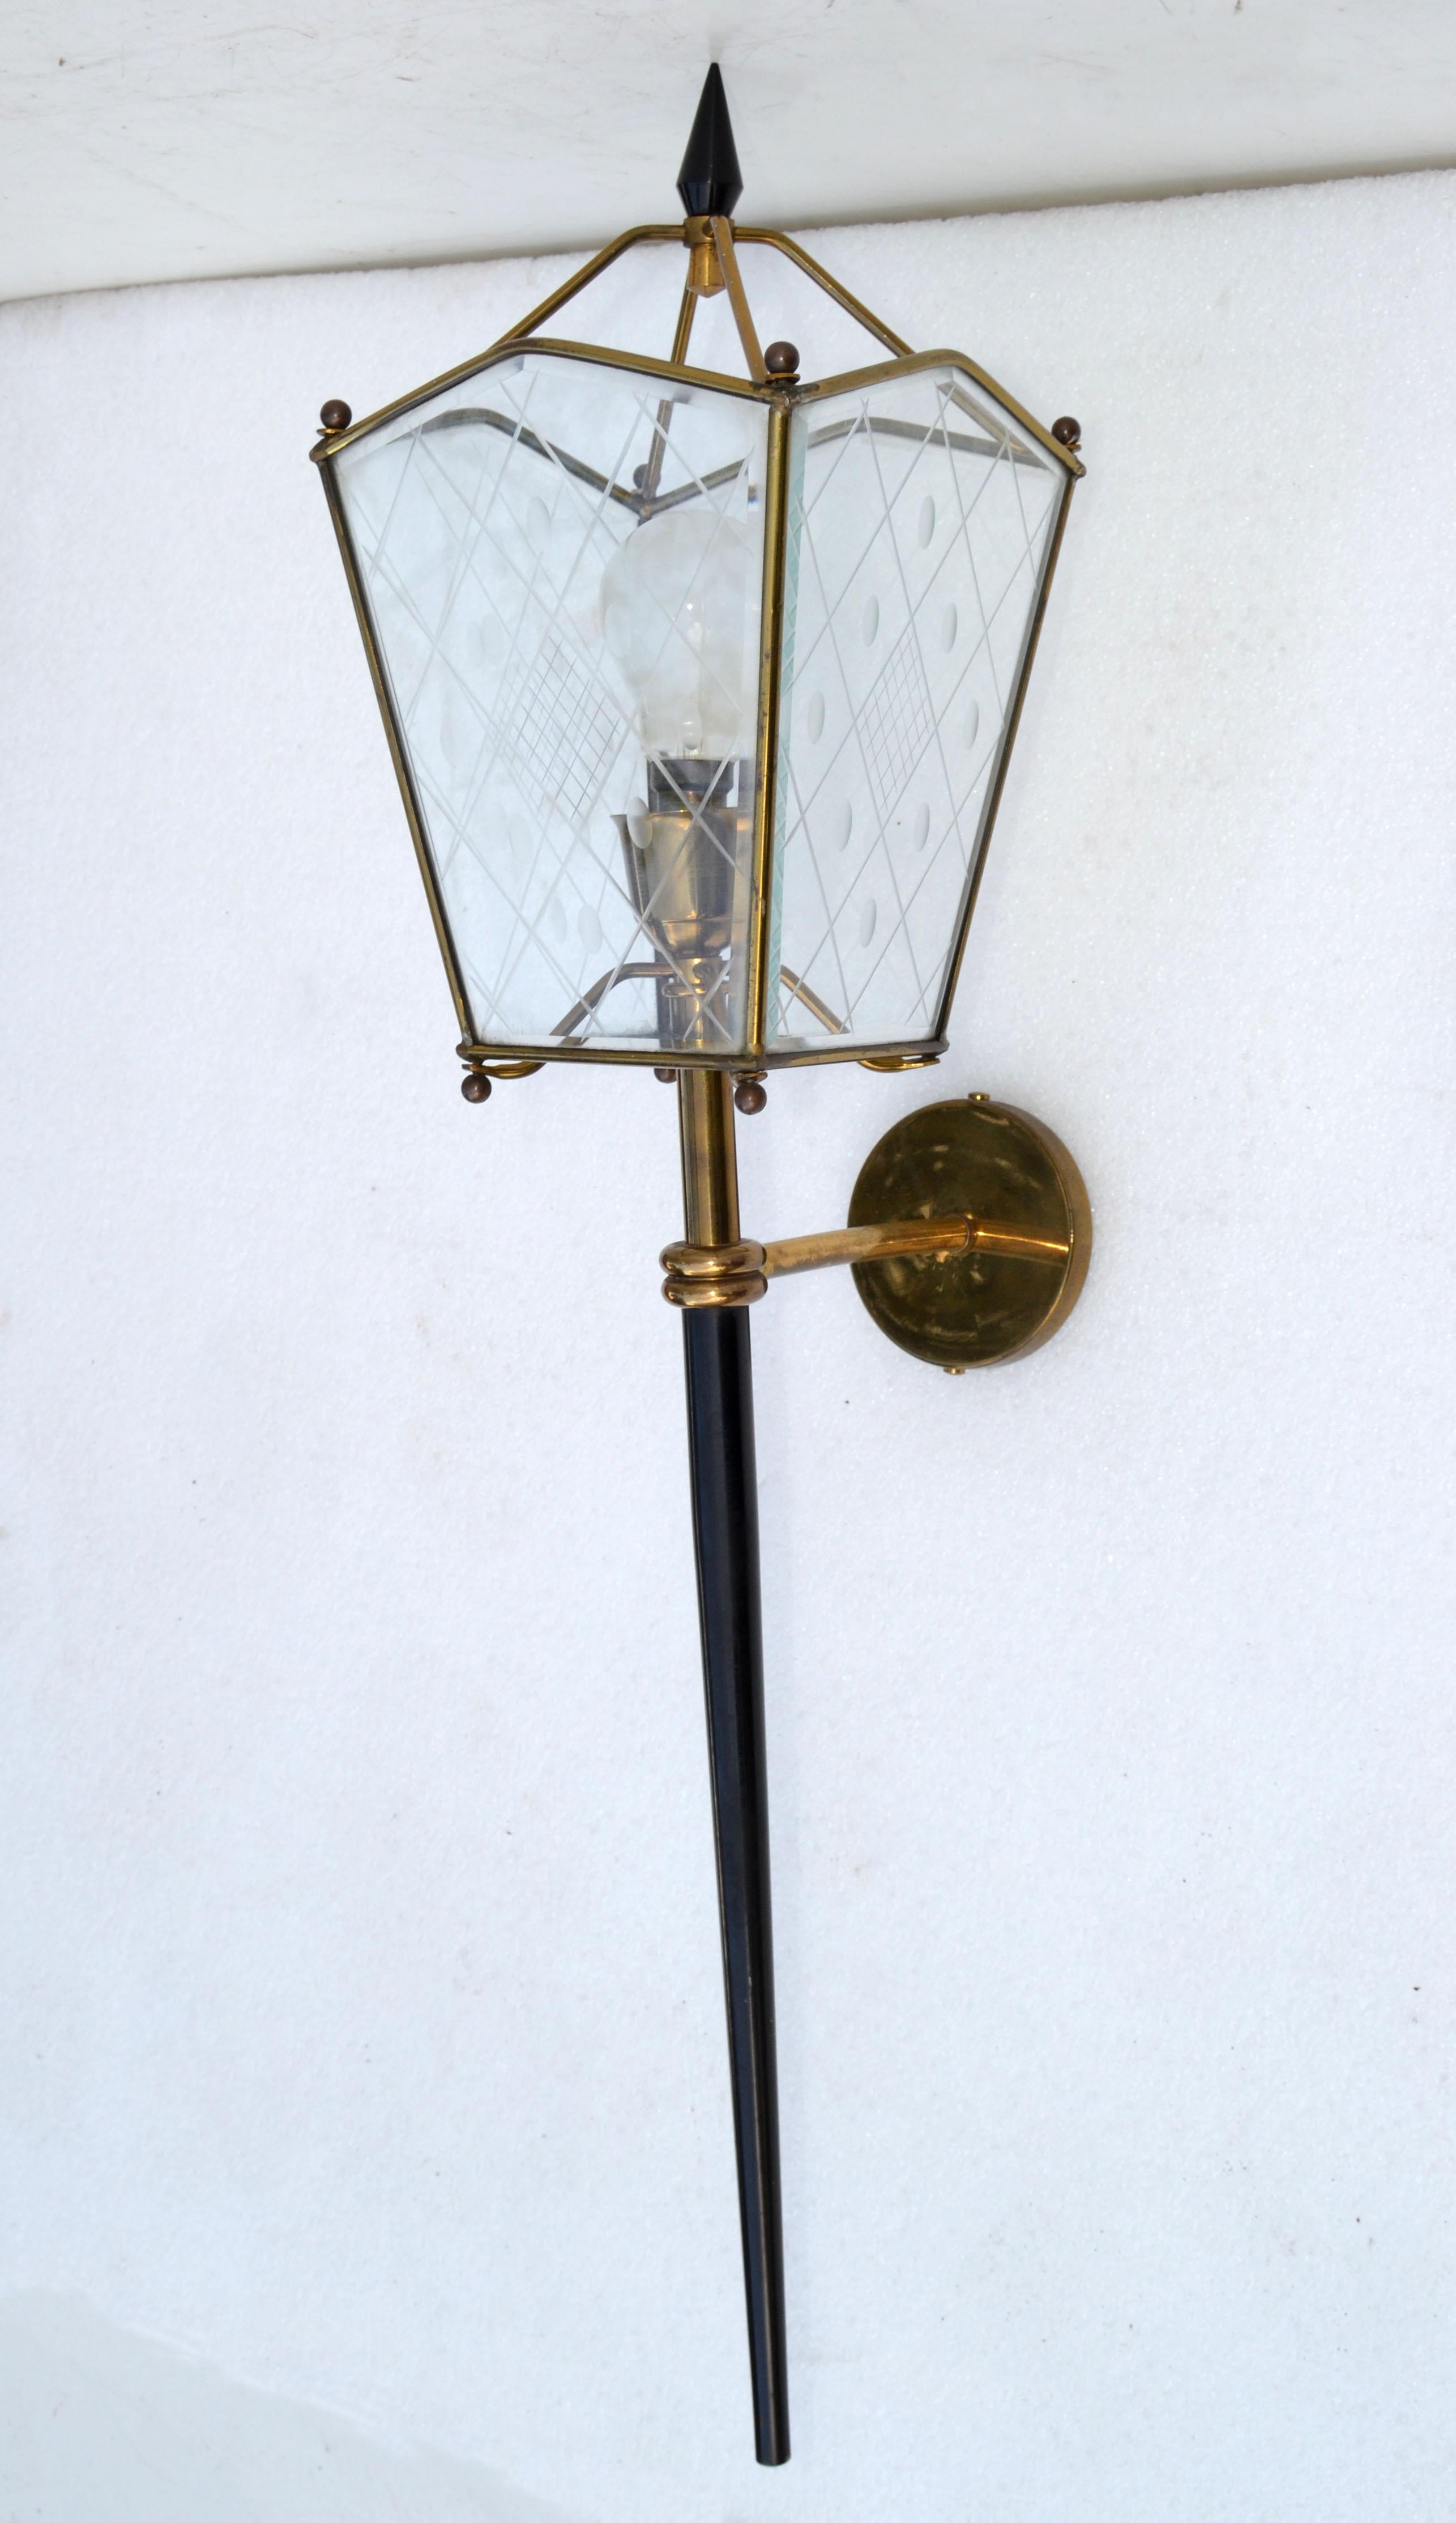 Paar von Jacques Adnet Stil Wandleuchten, Laterne Lampen in Messing, geätztem Glas und gun Metall, das ist die größte Größe, misst 31 Zoll Höhe. 
In perfektem Zustand, Sconce nimmt 1 Glühbirne max. 40 Watt, oder LED-Glühbirne.
Die Projektion von